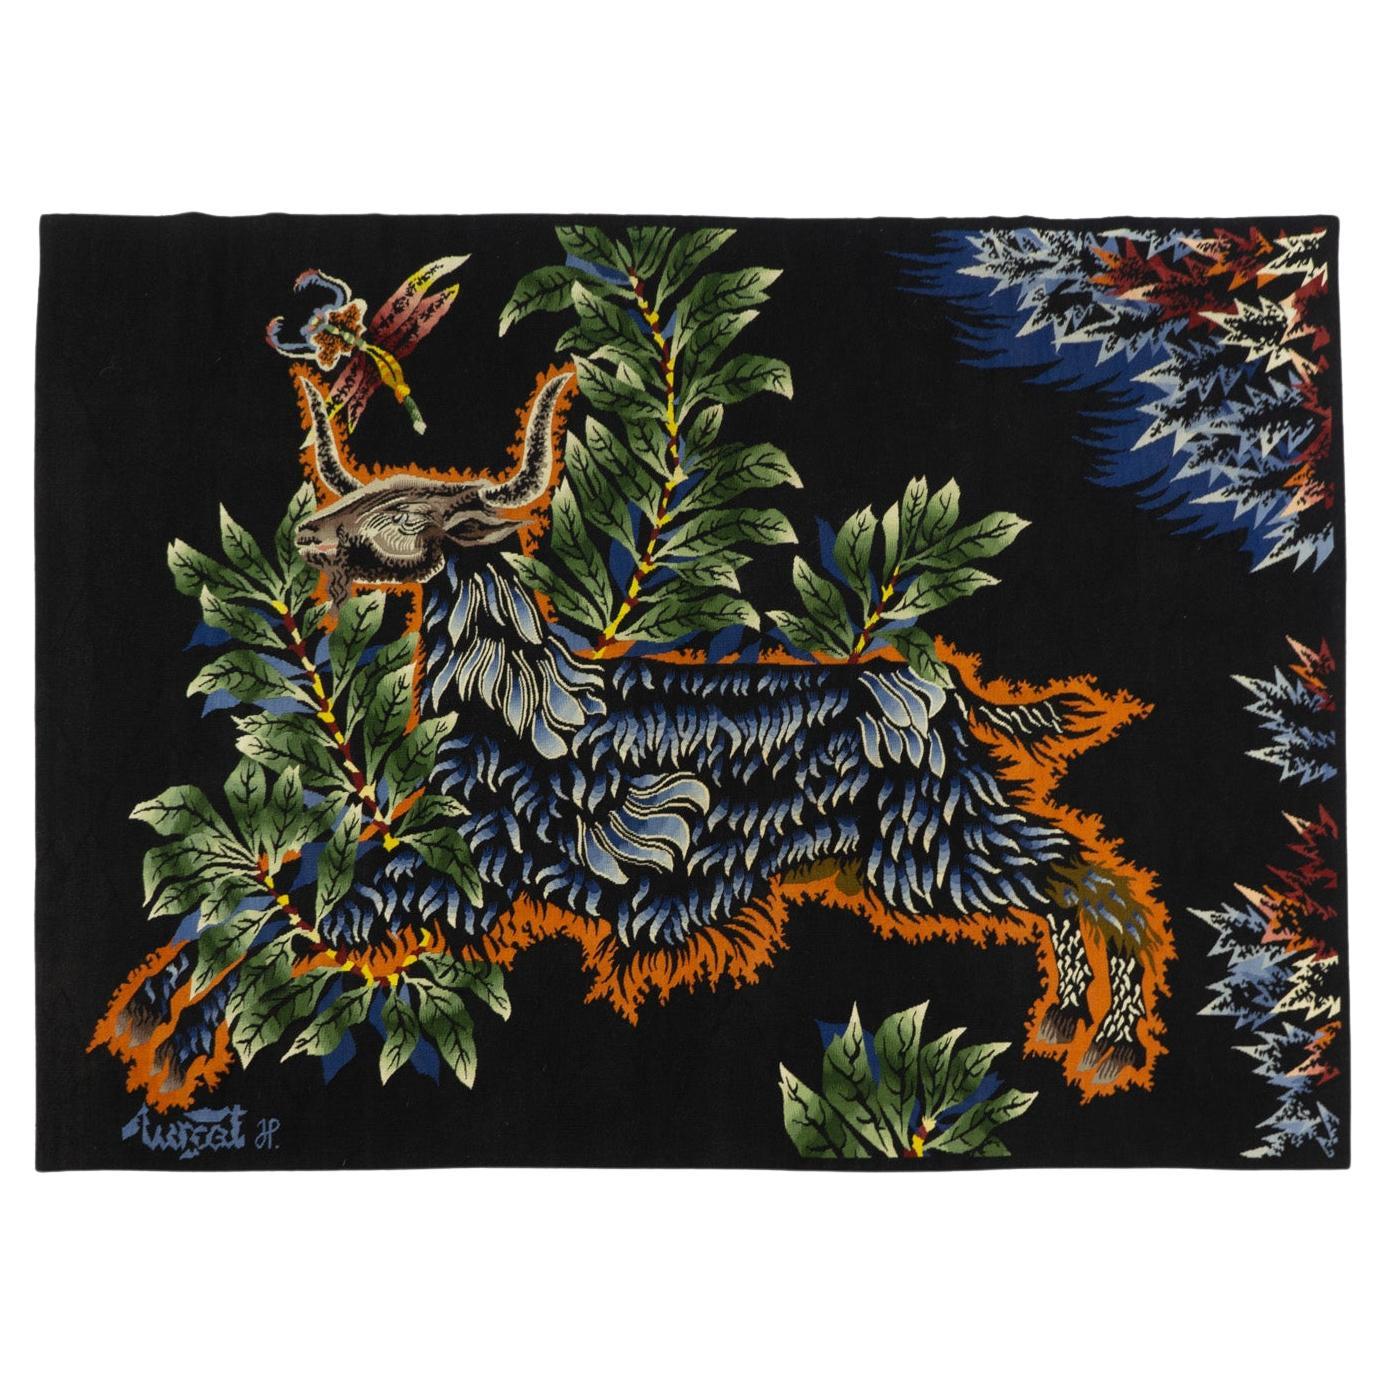 Jean Lurçat Woolen Tapestry, “Le Bouc Blue” – France 1950s